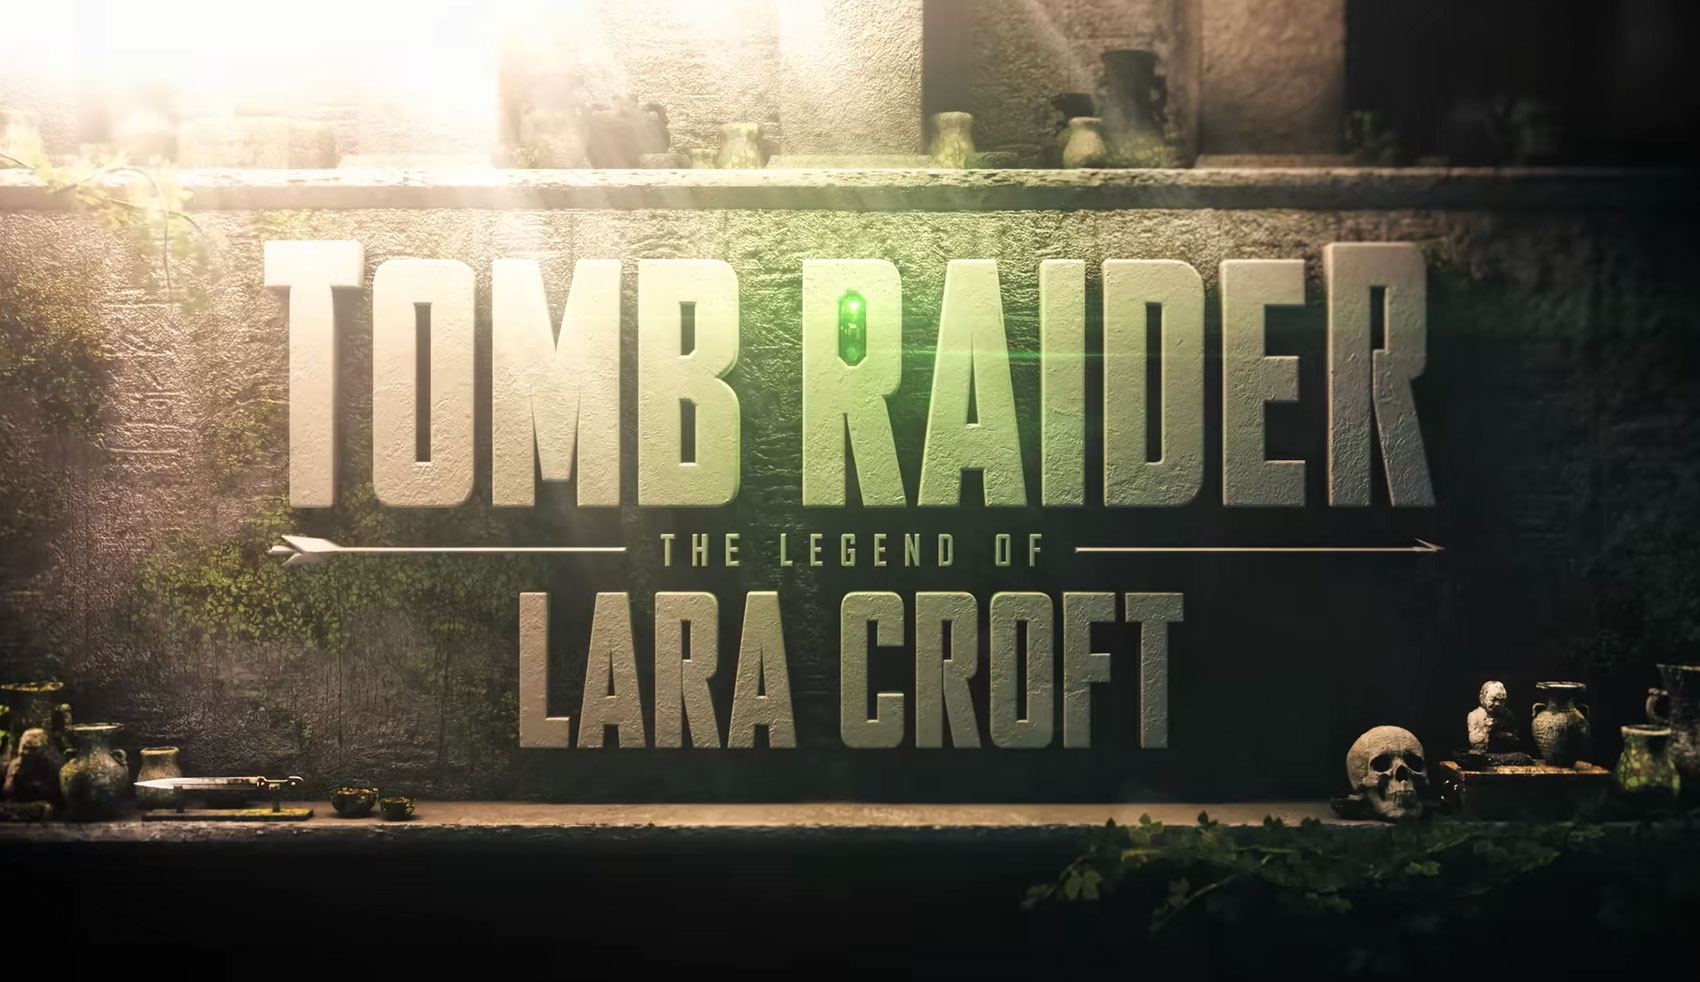 1 ABRIL) 'The Tomb Raider' é a próxima SÉRIE ORIGINAL DA NETFLIX